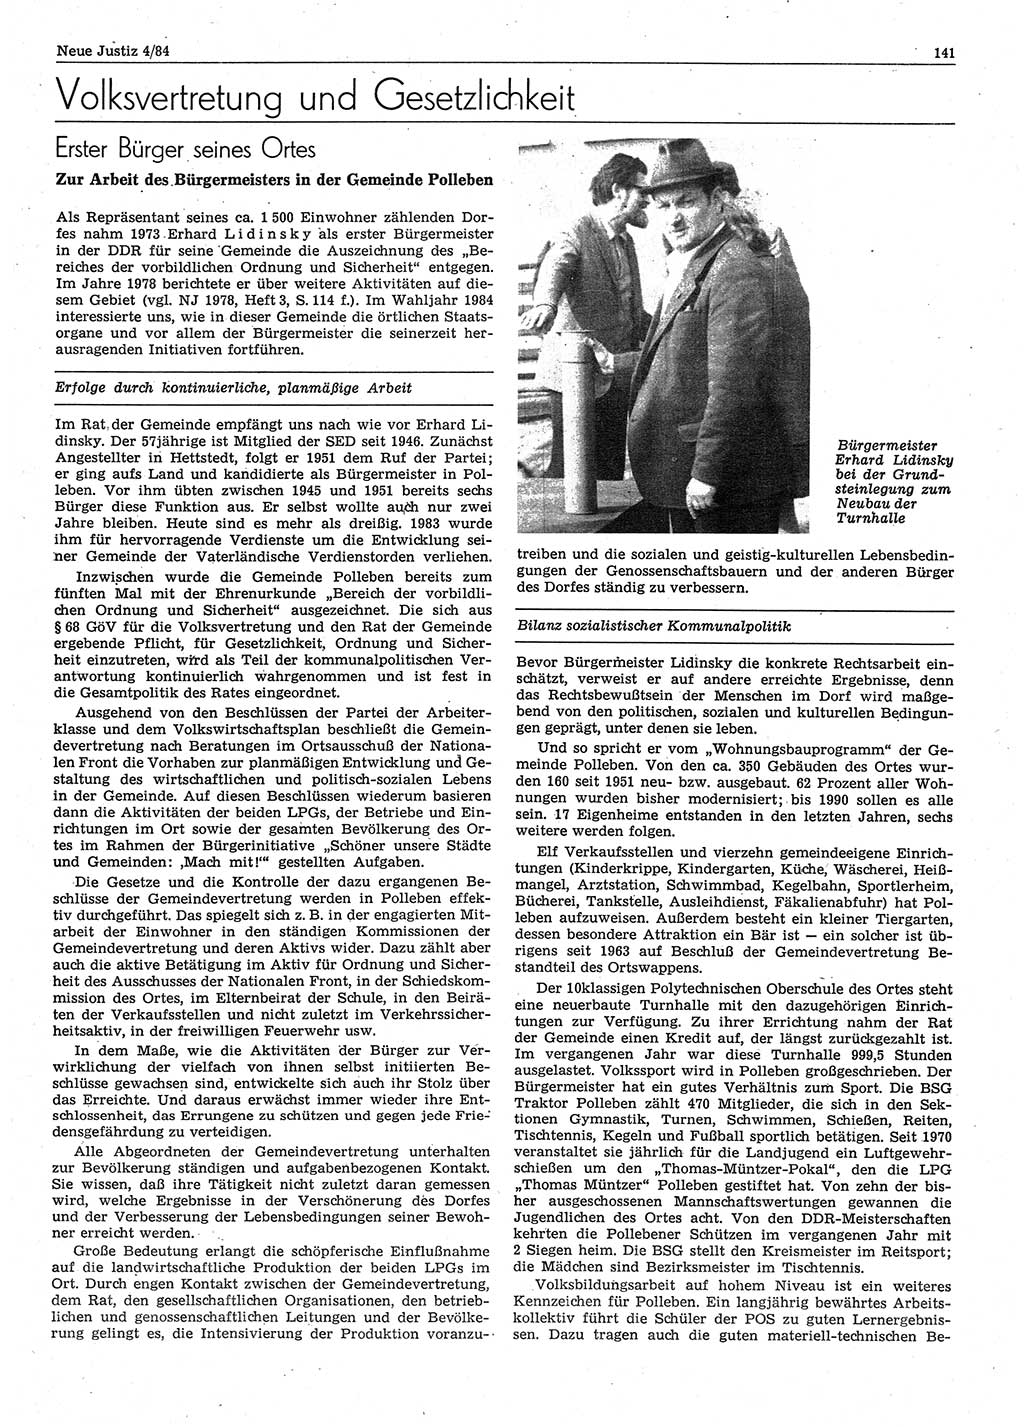 Neue Justiz (NJ), Zeitschrift für sozialistisches Recht und Gesetzlichkeit [Deutsche Demokratische Republik (DDR)], 38. Jahrgang 1984, Seite 141 (NJ DDR 1984, S. 141)